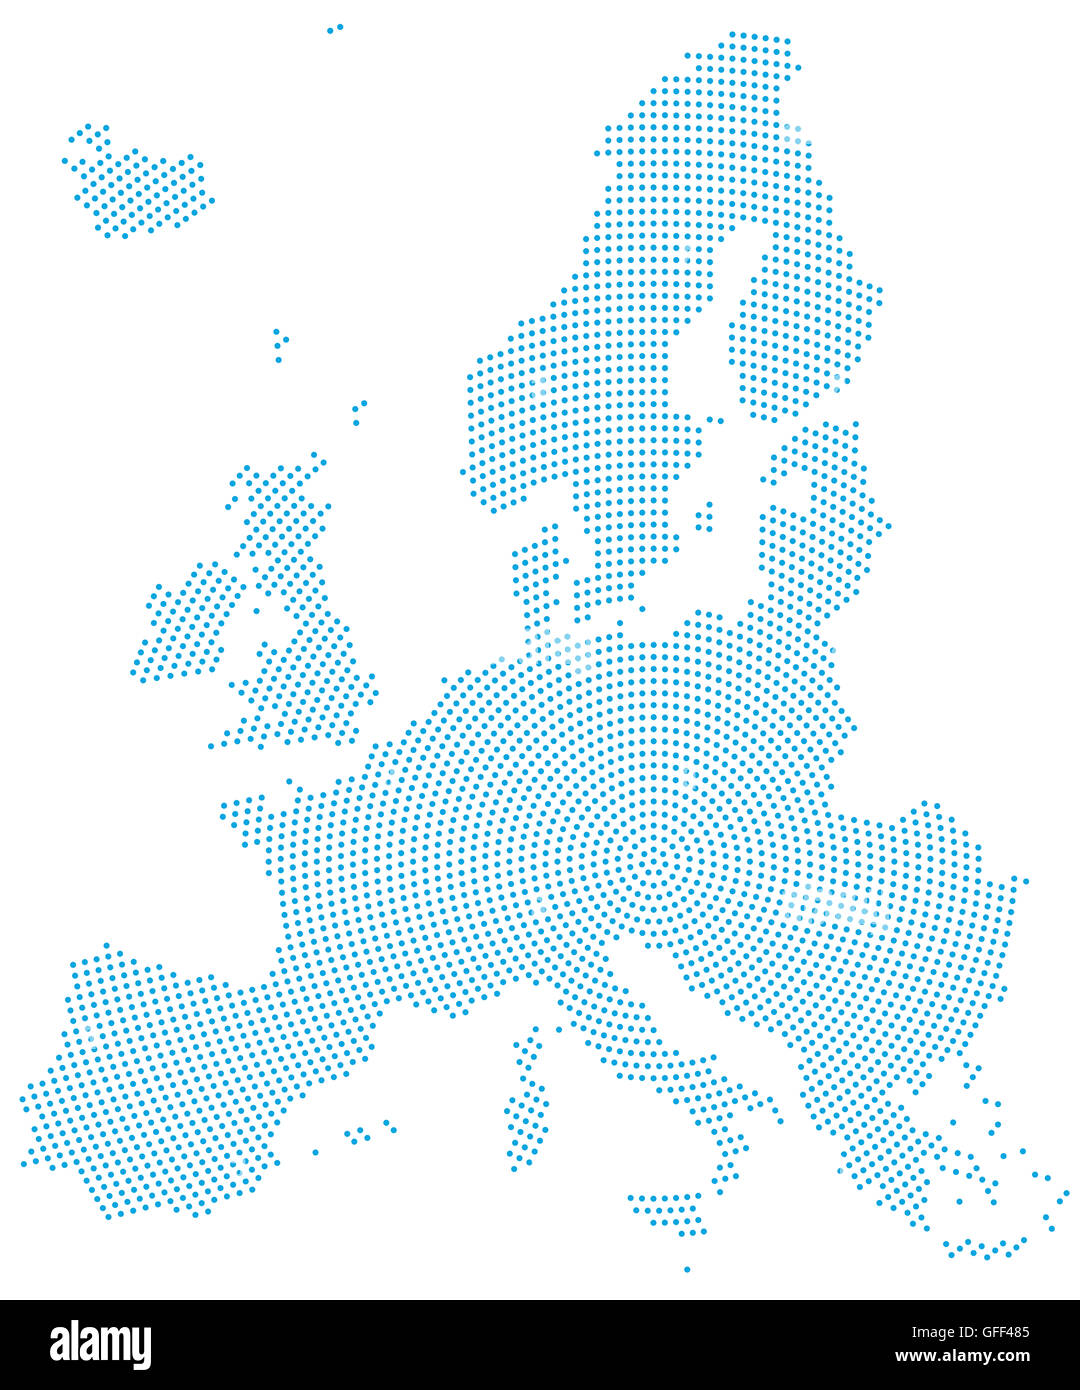 Europa Karte radial Punktmuster. Blaue Punkte gehen von der Mitte nach außen und bilden die Silhouette des Gebiets der Europäischen Union. Stockfoto